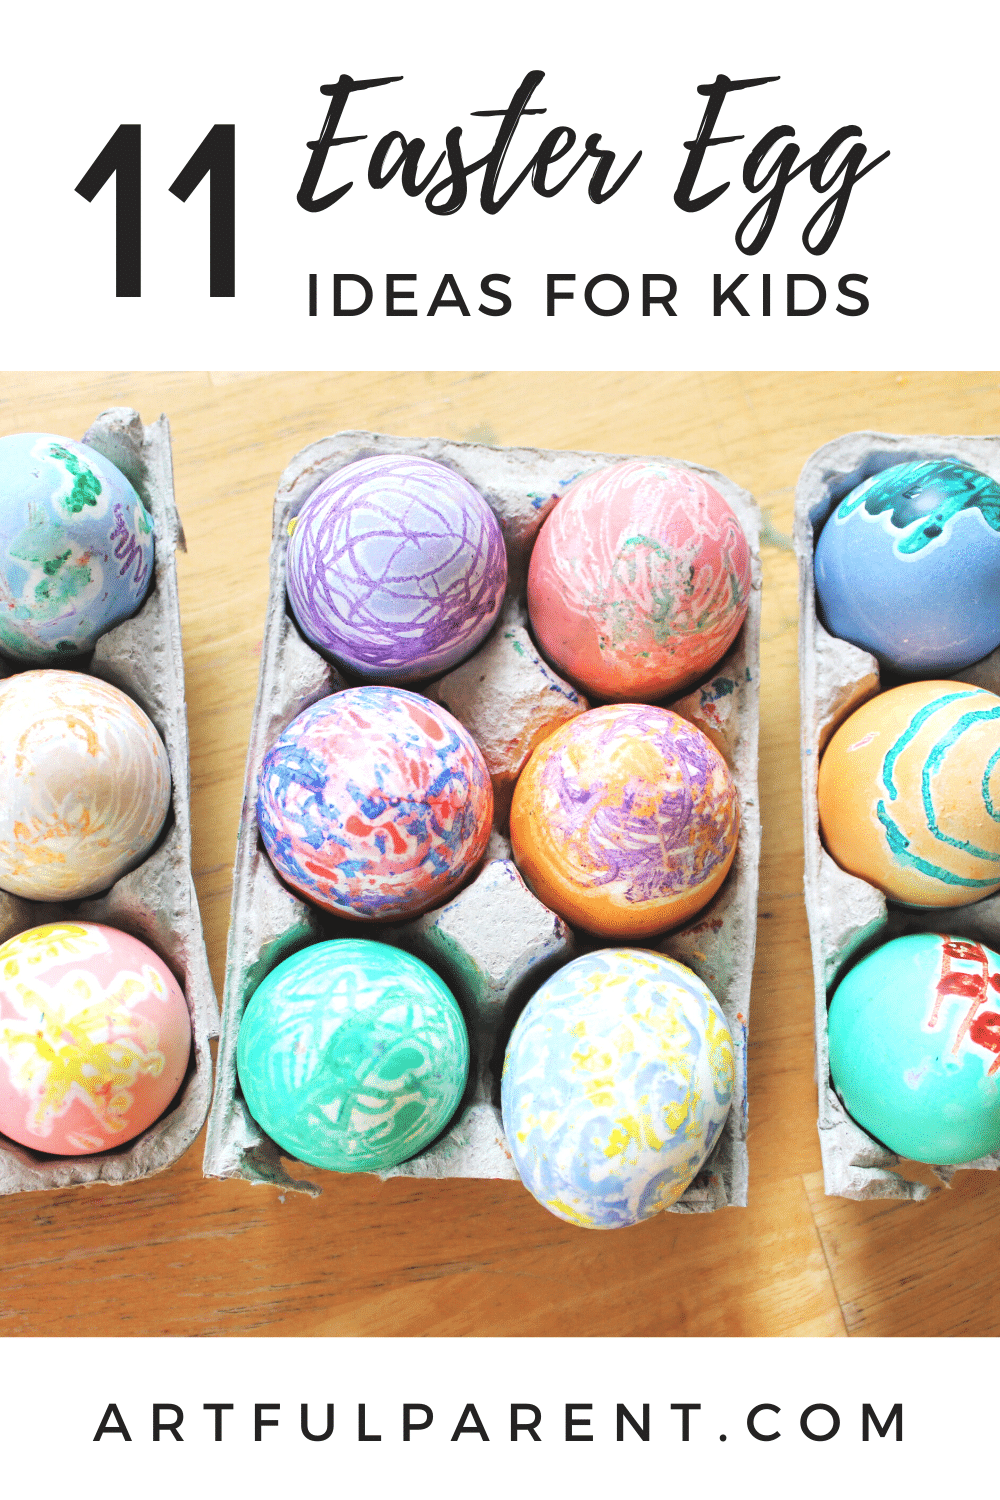 11 Creative Easter Egg Ideas for Kids